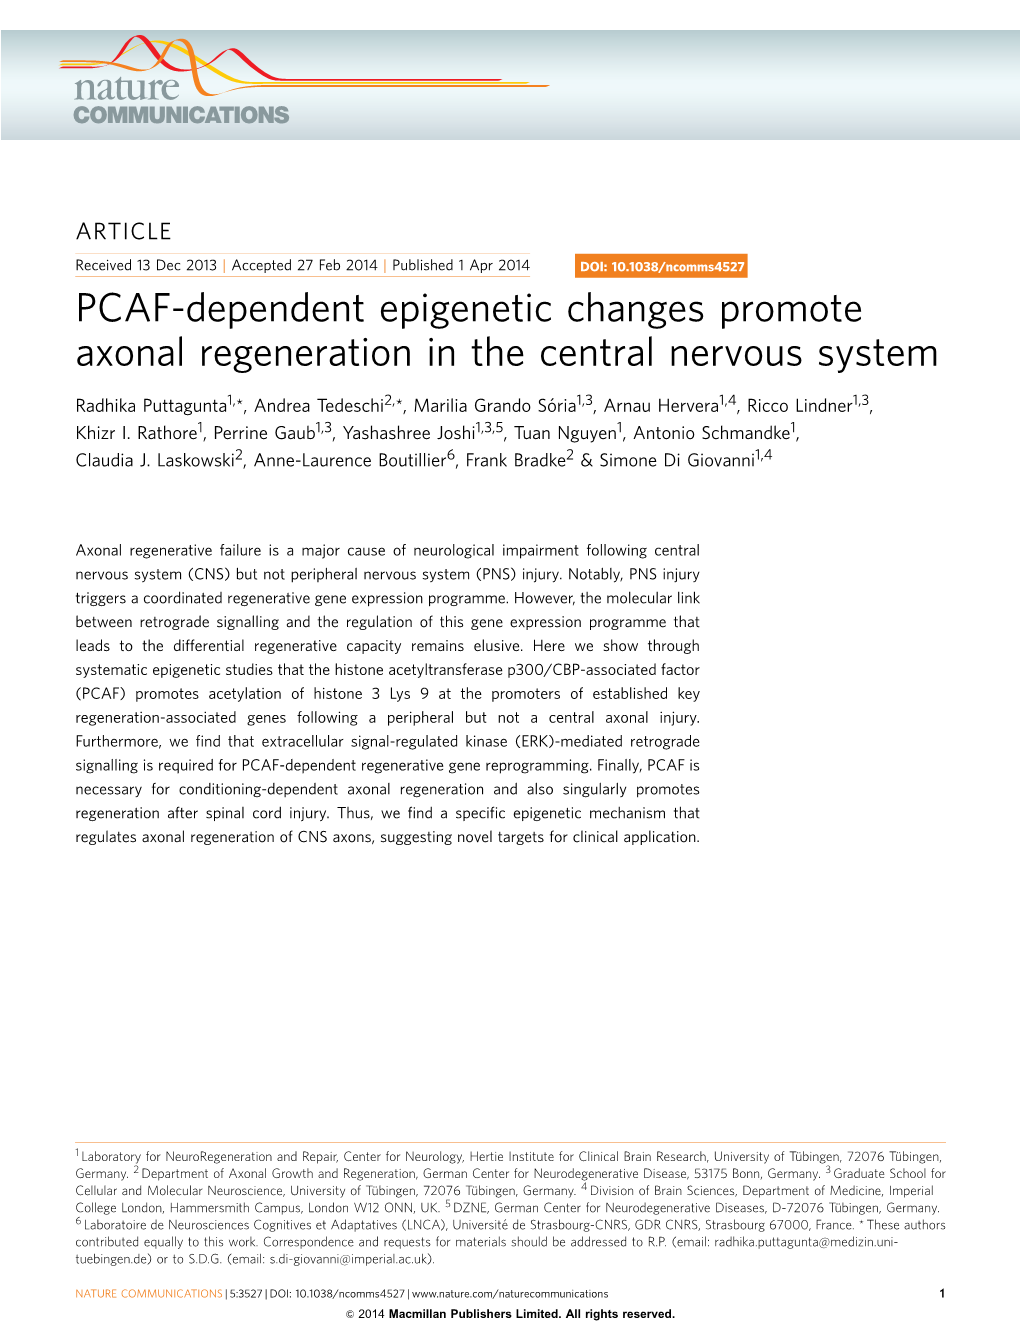 PCAF-Dependent Epigenetic Changes Promote Axonal Regeneration in the Central Nervous System